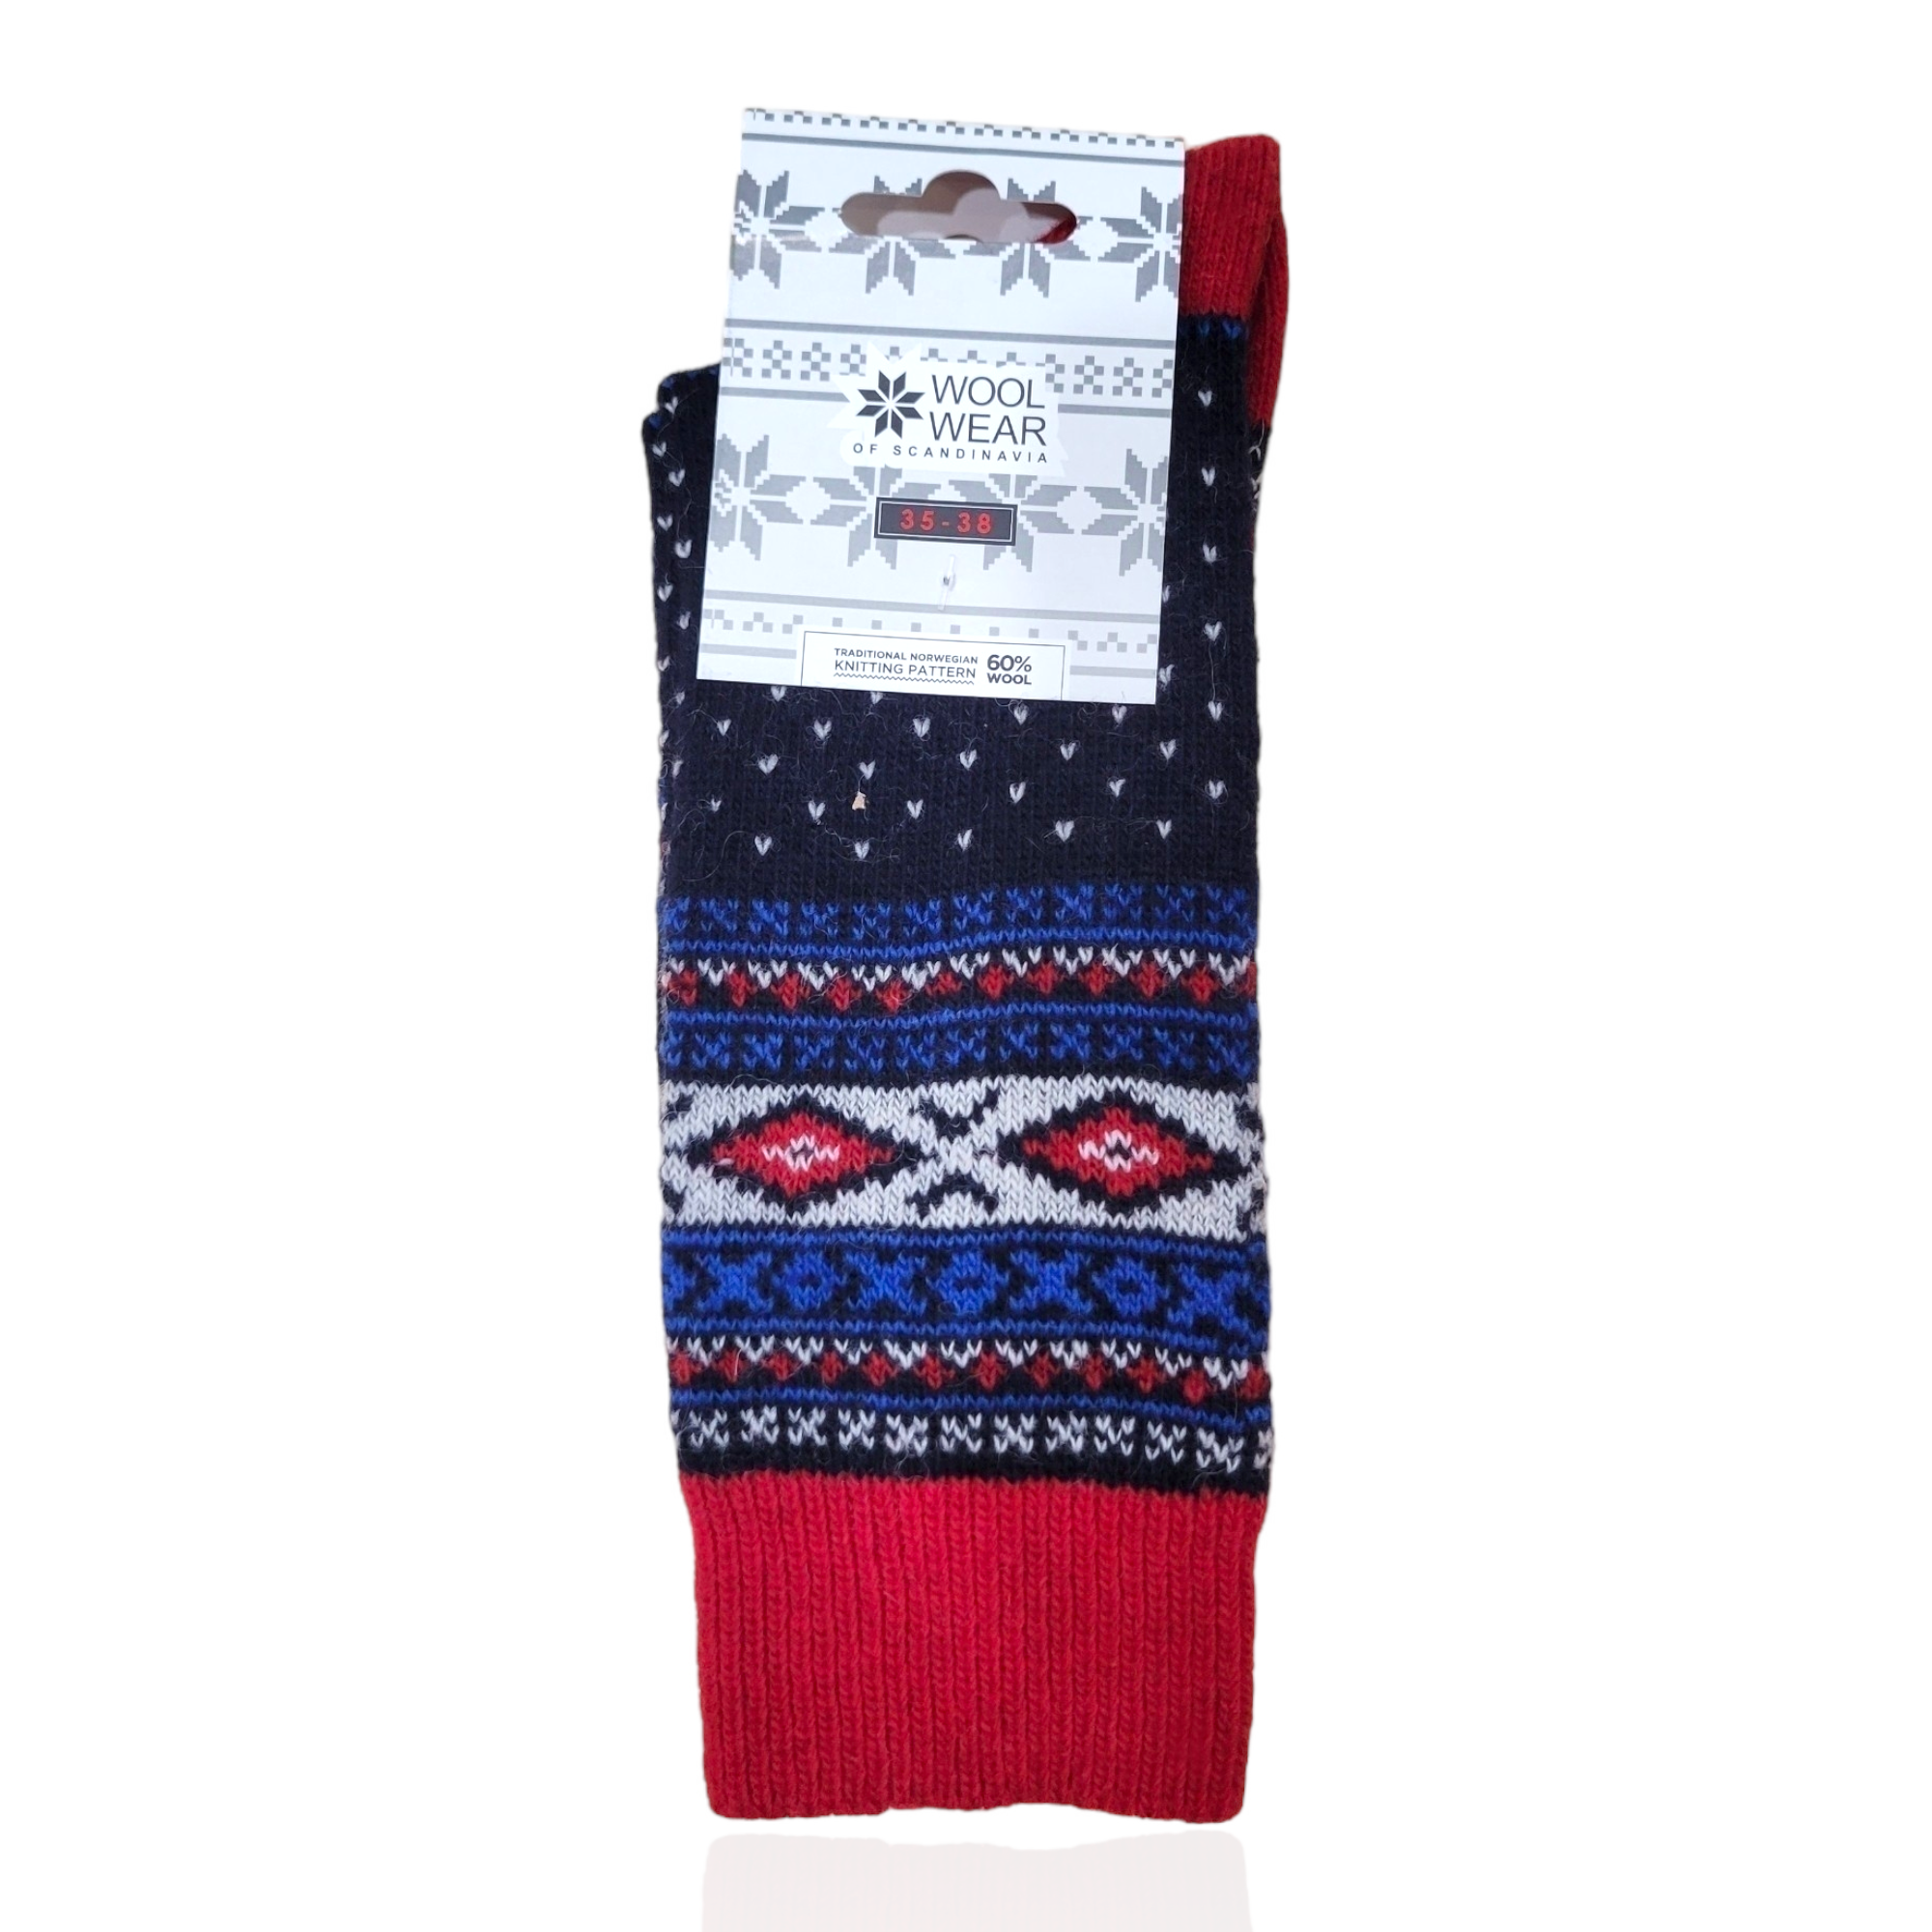 Socks: Wool Wear - Scandi Knit Navy/Red